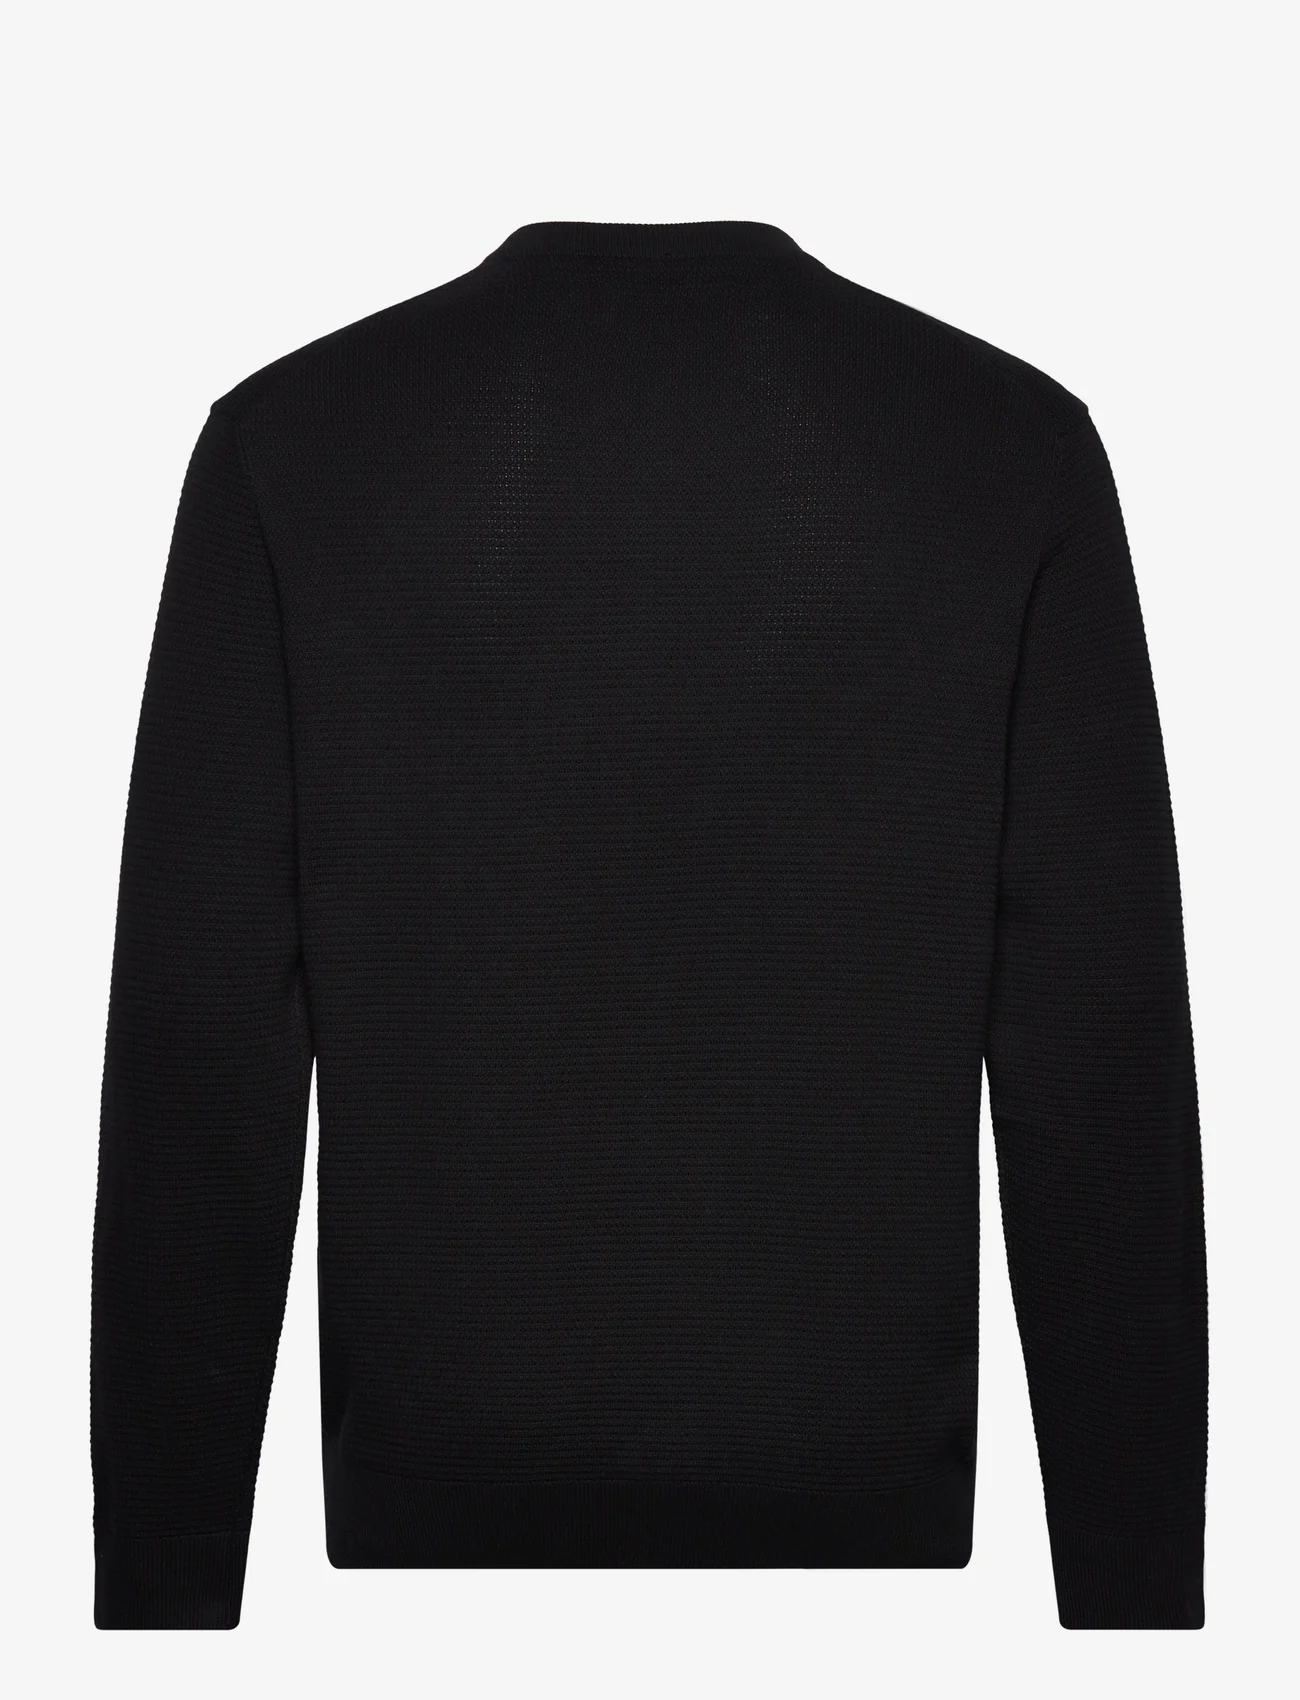 Tom Tailor - structured basic knit - laveste priser - black - 1